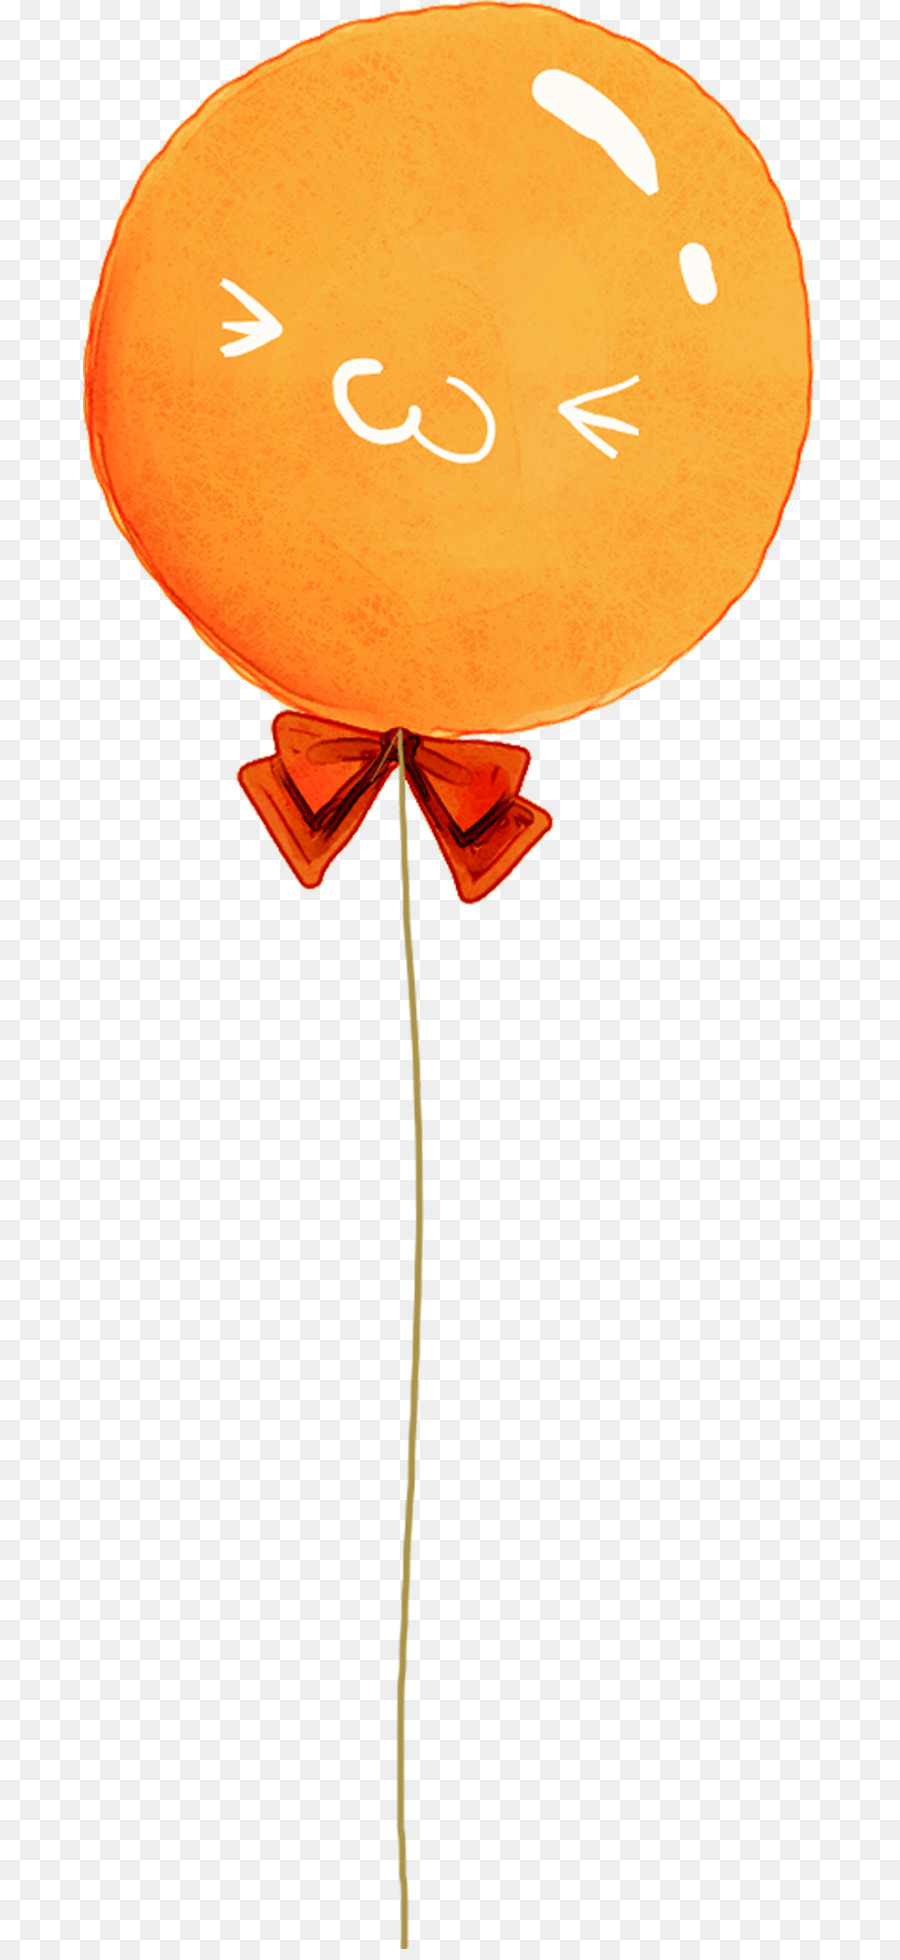 Orange Bóng Phim Hoạt Hình - Phim hoạt hình bóng cam